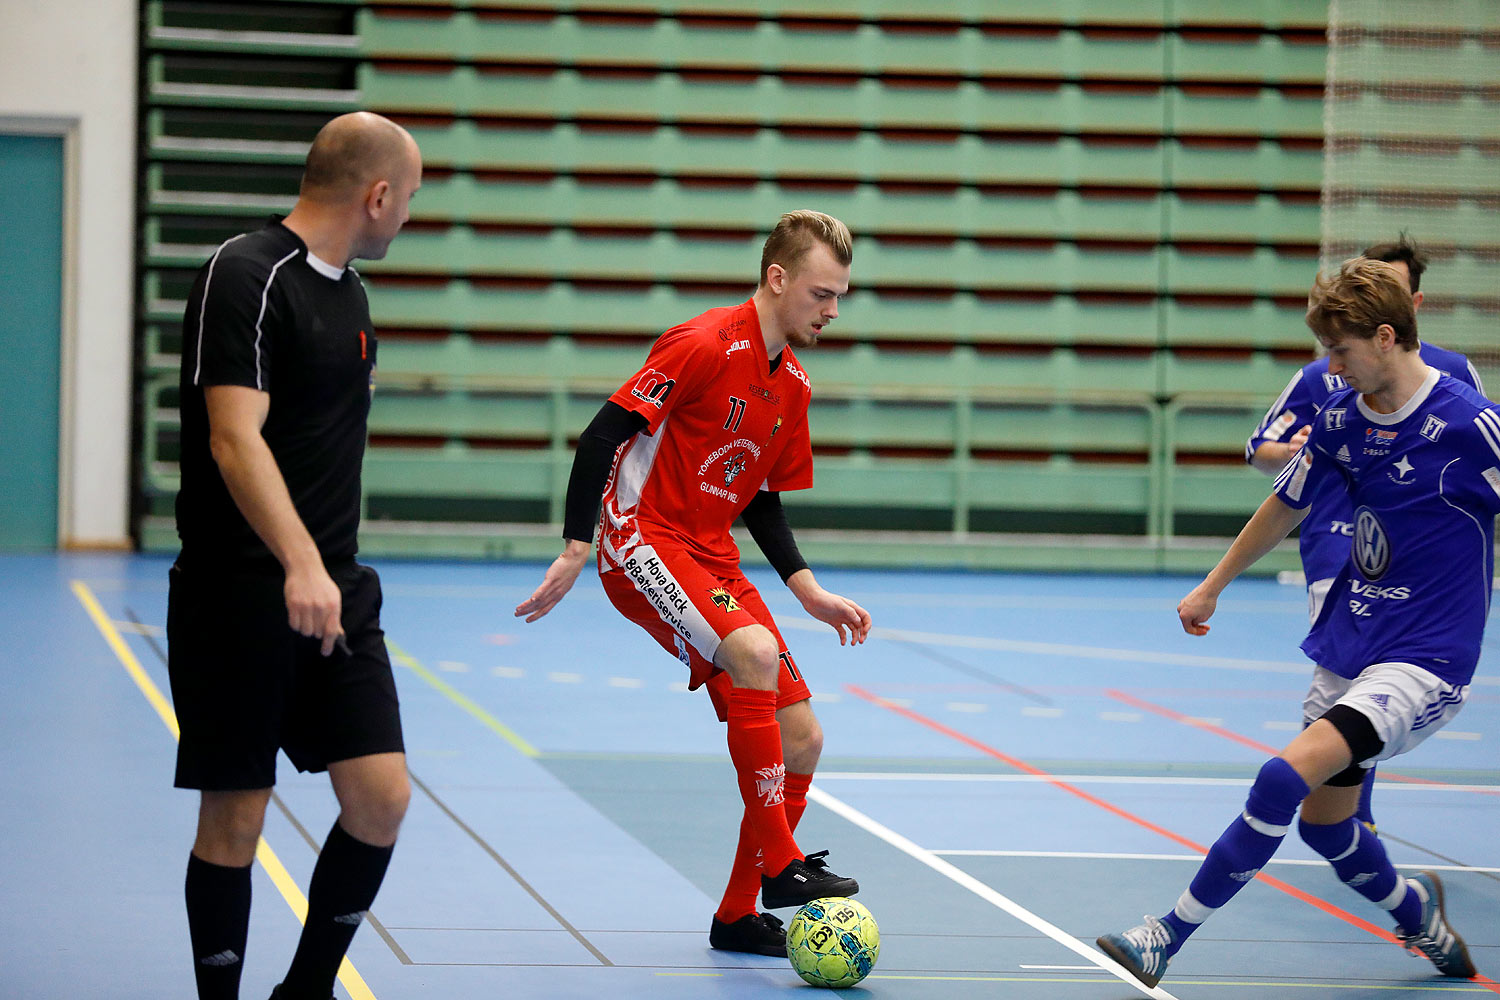 Skövde Futsalcup Herrjuniorer IFK Falköping FF-Töreboda IK,herr,Arena Skövde,Skövde,Sverige,Skövde Futsalcup 2016,Futsal,2016,142569